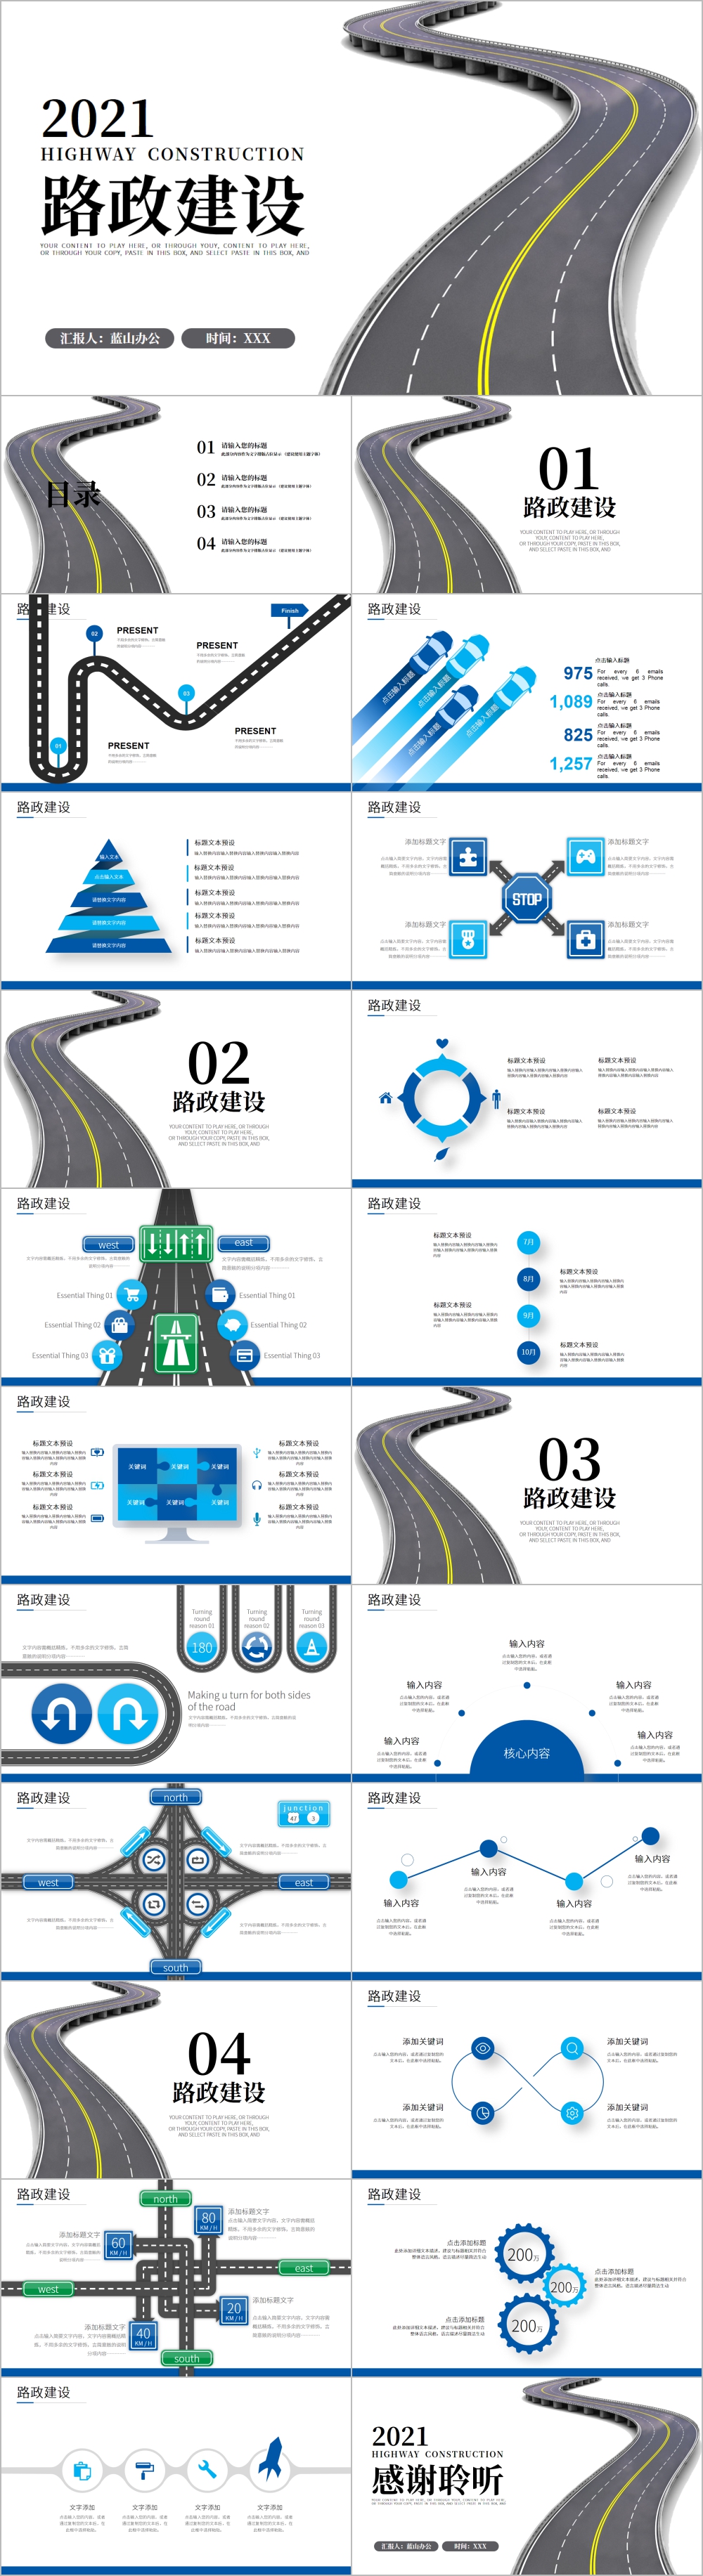 路政交通道路建设中国公路PPT模板